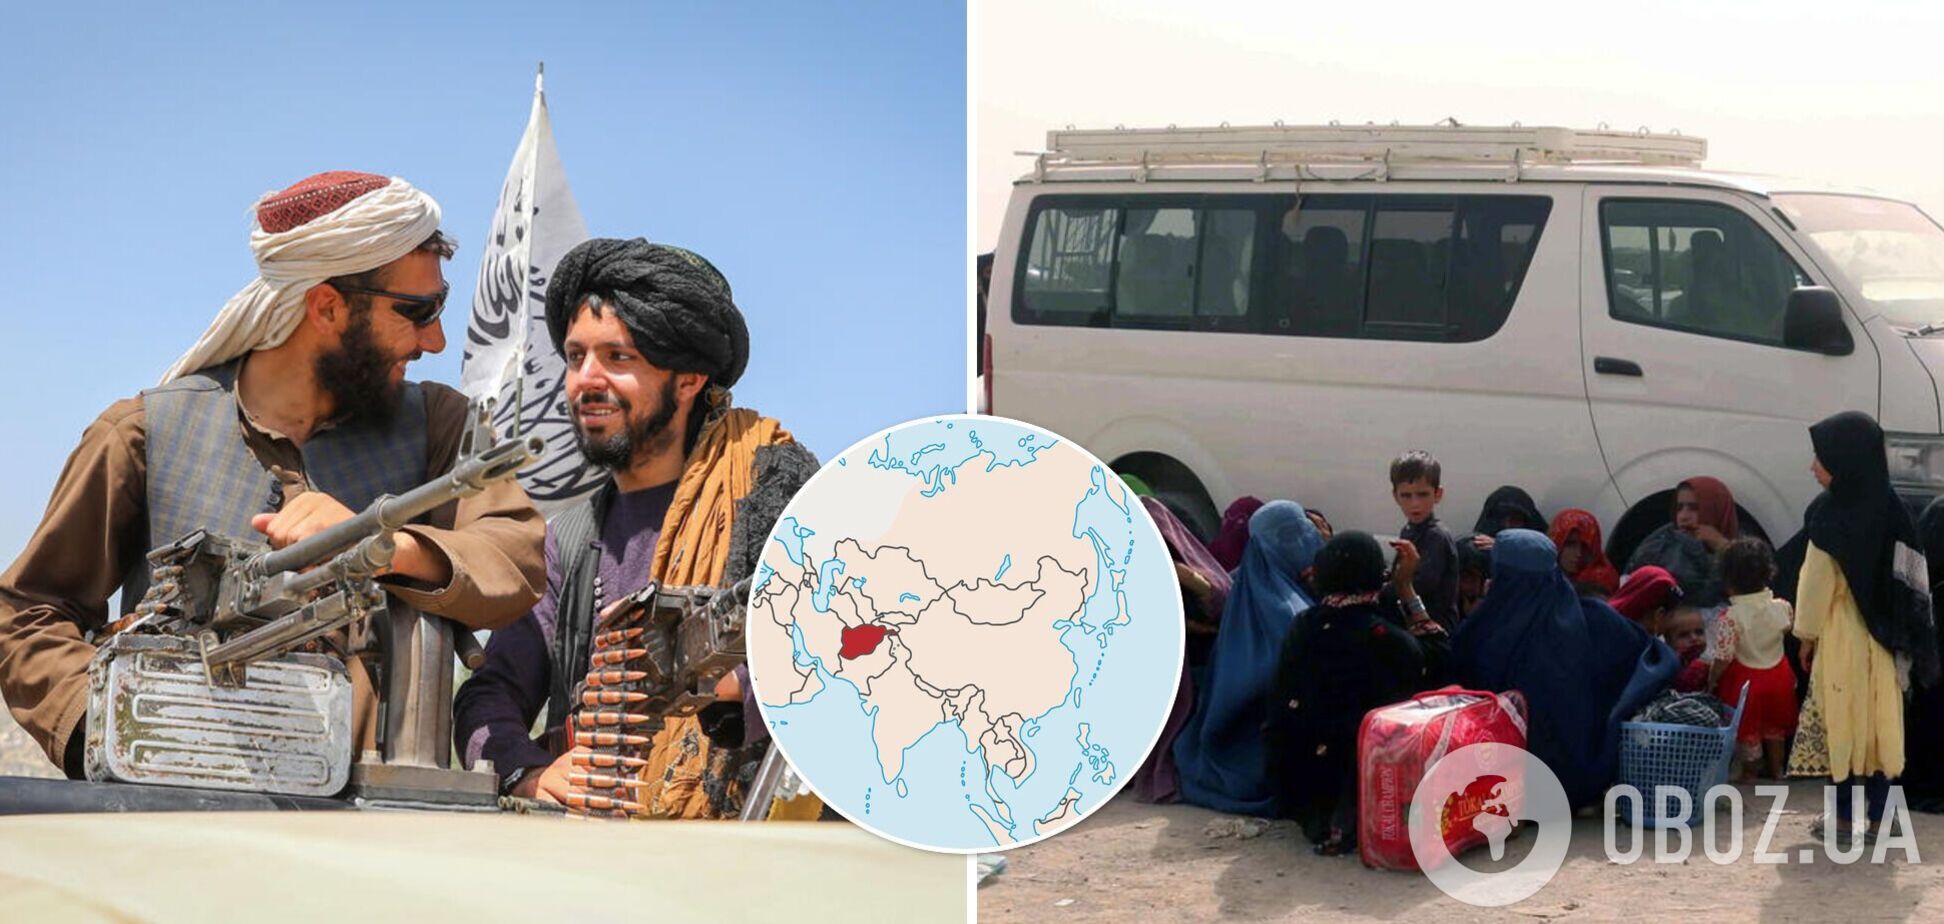 'Талибан' объявил всеобщую амнистию в Афганистане: что происходит в стране. Фото и видео